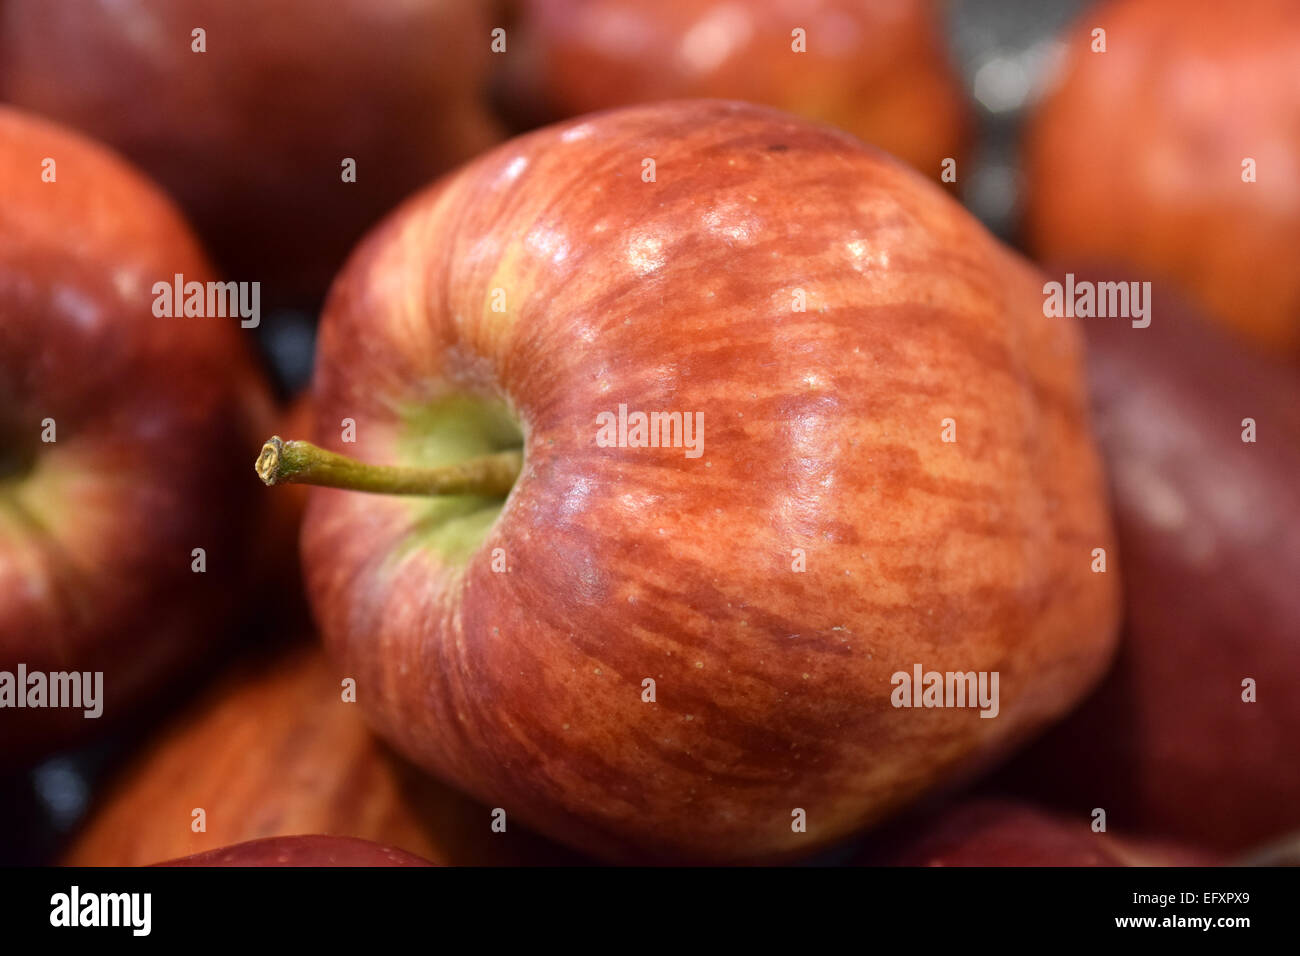 Schöne rote frische Äpfel, Obst, wurden ausgewählt, um fotografiert zu werden Stockfoto